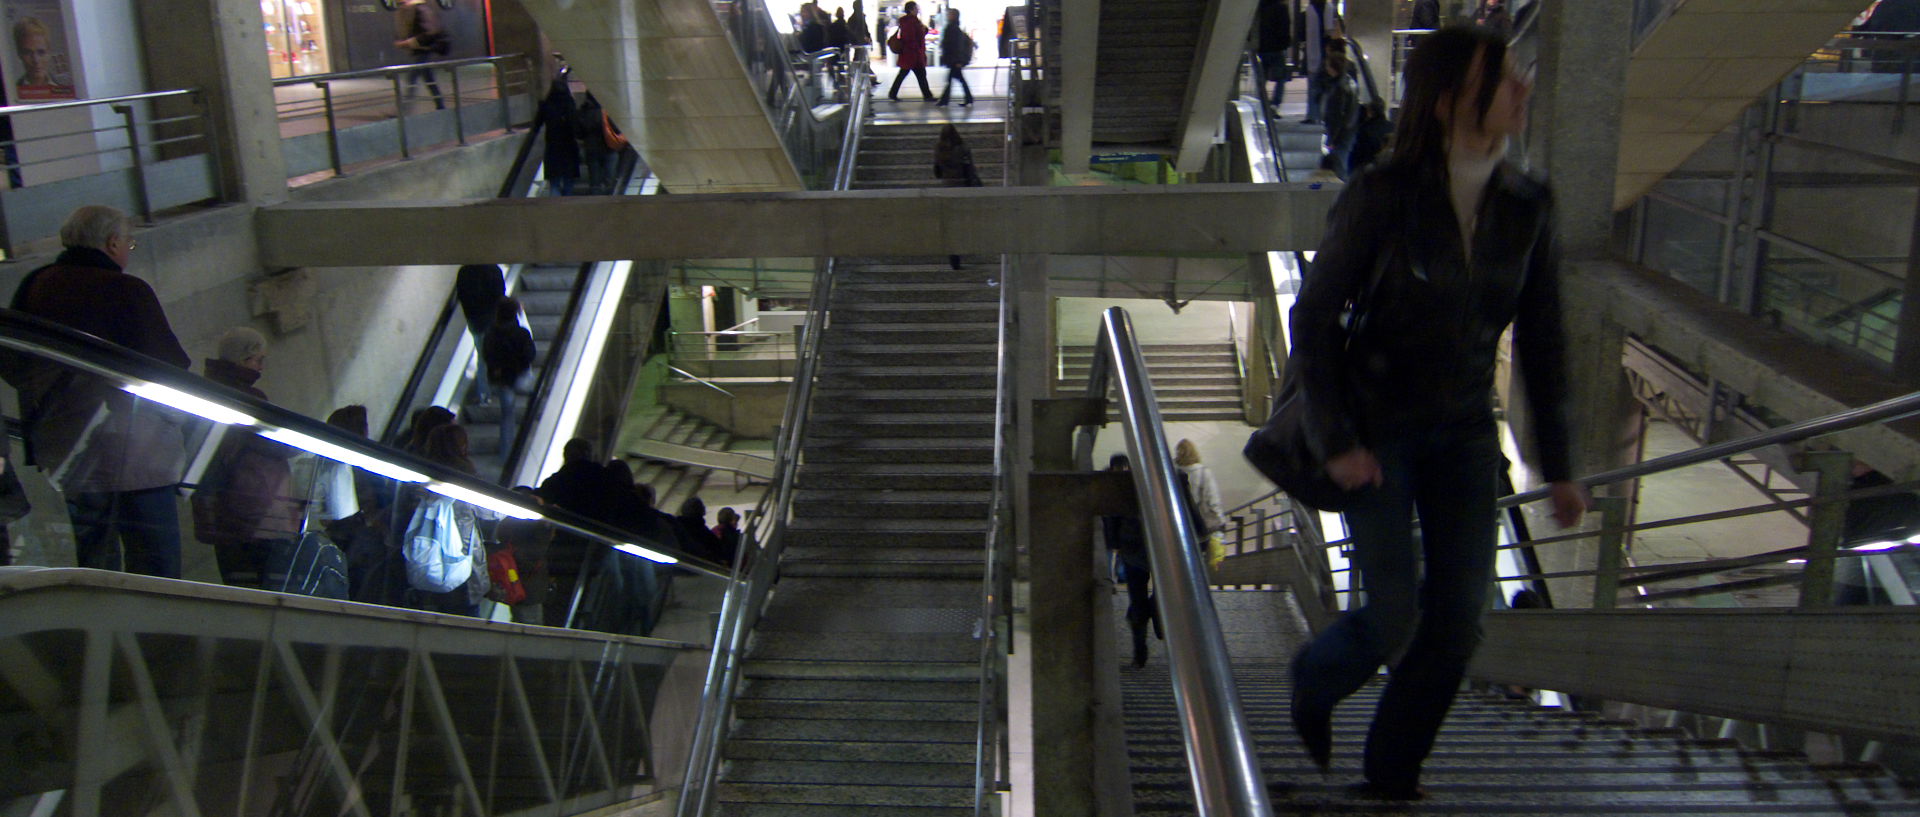 Mardi 17 février 2009, 19:19, gare Montparnasse, à Paris.